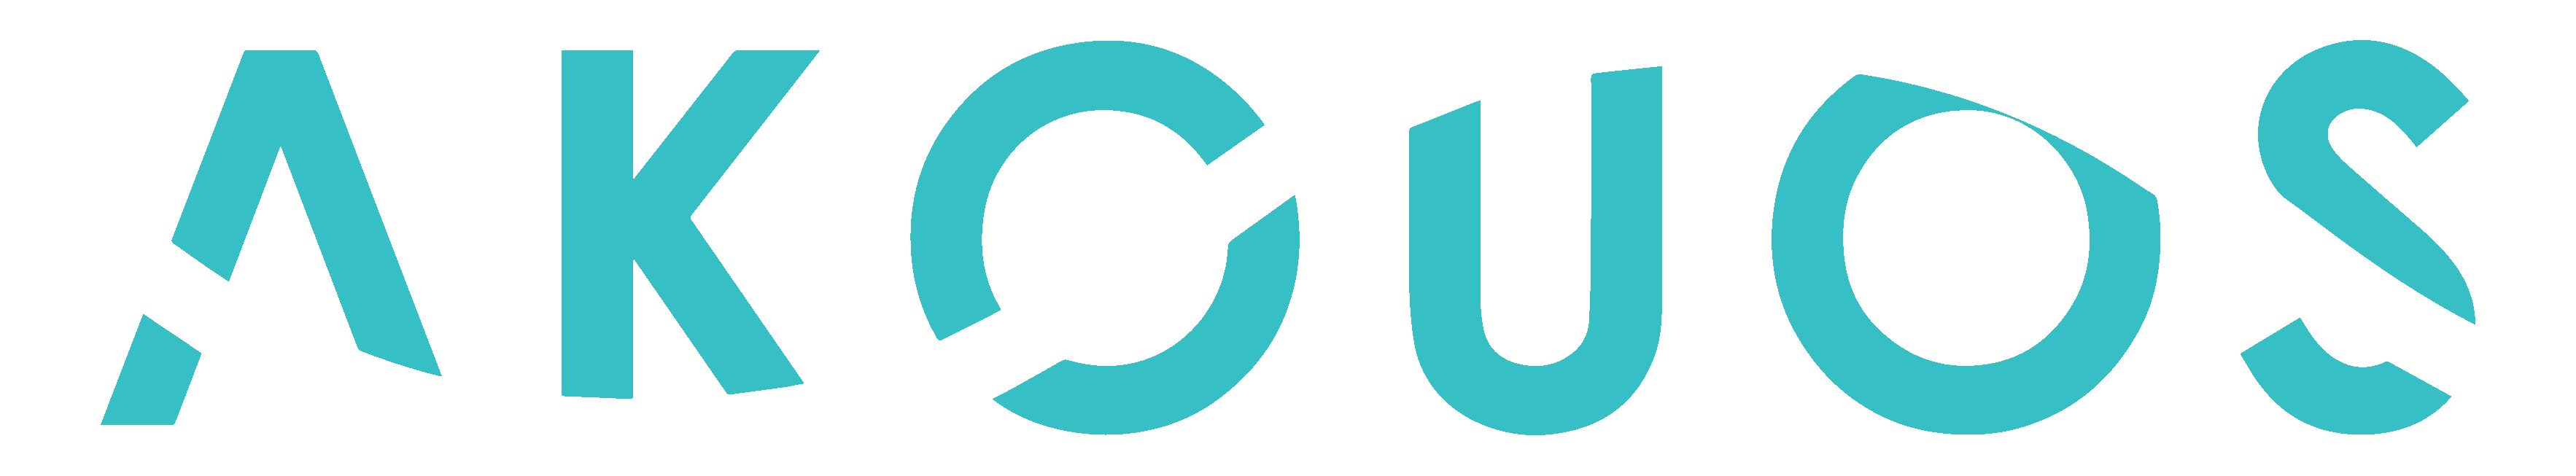 Akouos logo